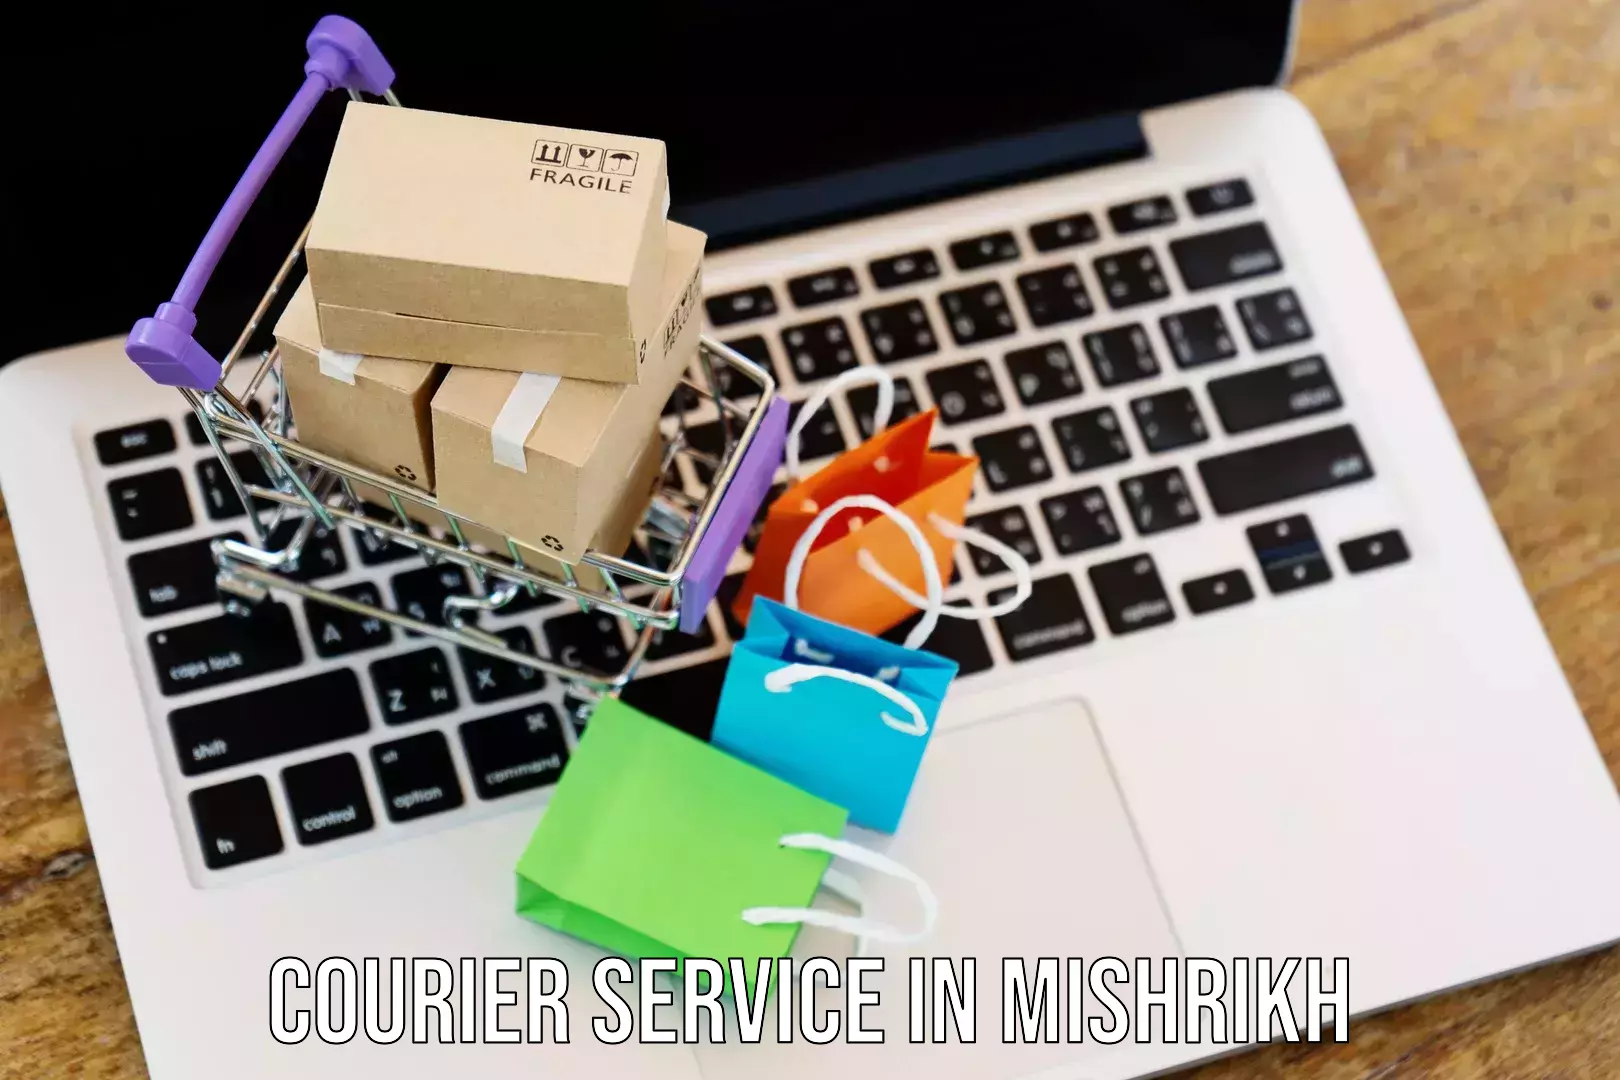 Parcel service for businesses in Mishrikh